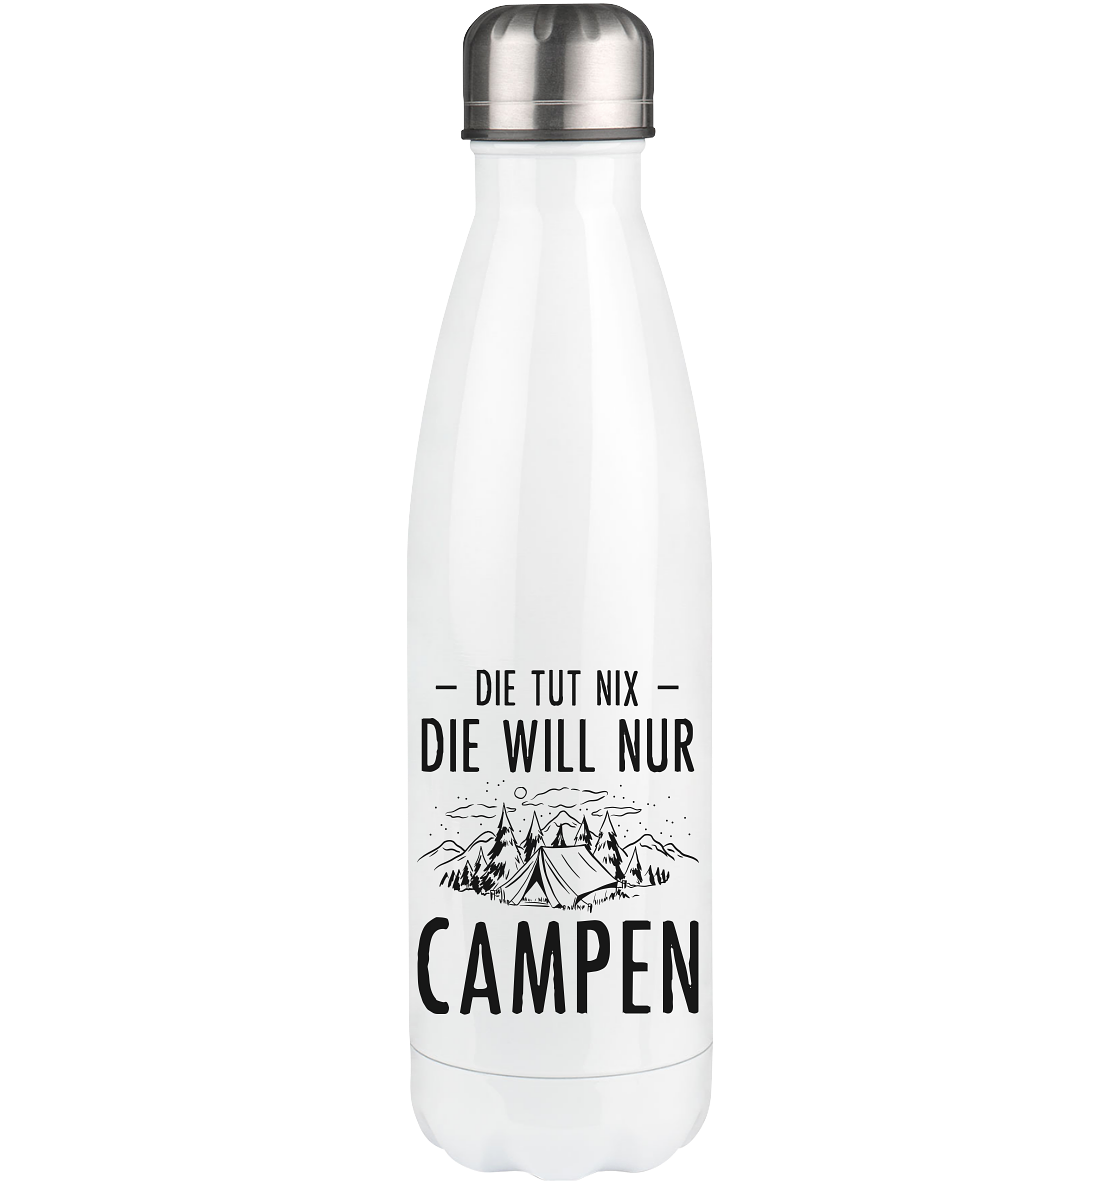 Die Tut Nix Die Will Nur Campen - Edelstahl Thermosflasche camping UONP 500ml